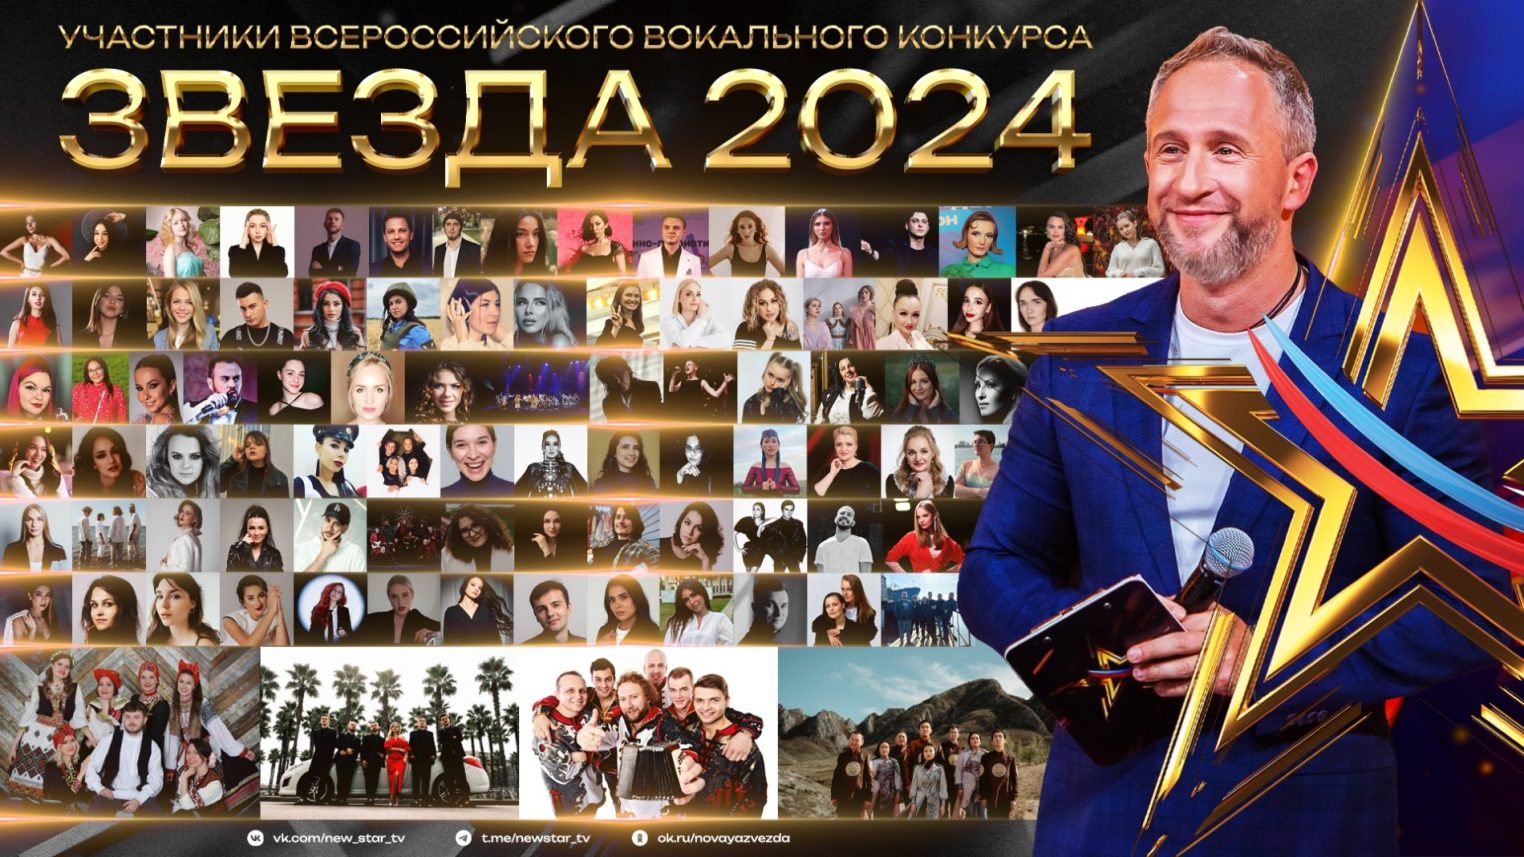 Татьяна Сагина представит Кострому на Всероссийском вокальном конкурсе "Звезда-2024"